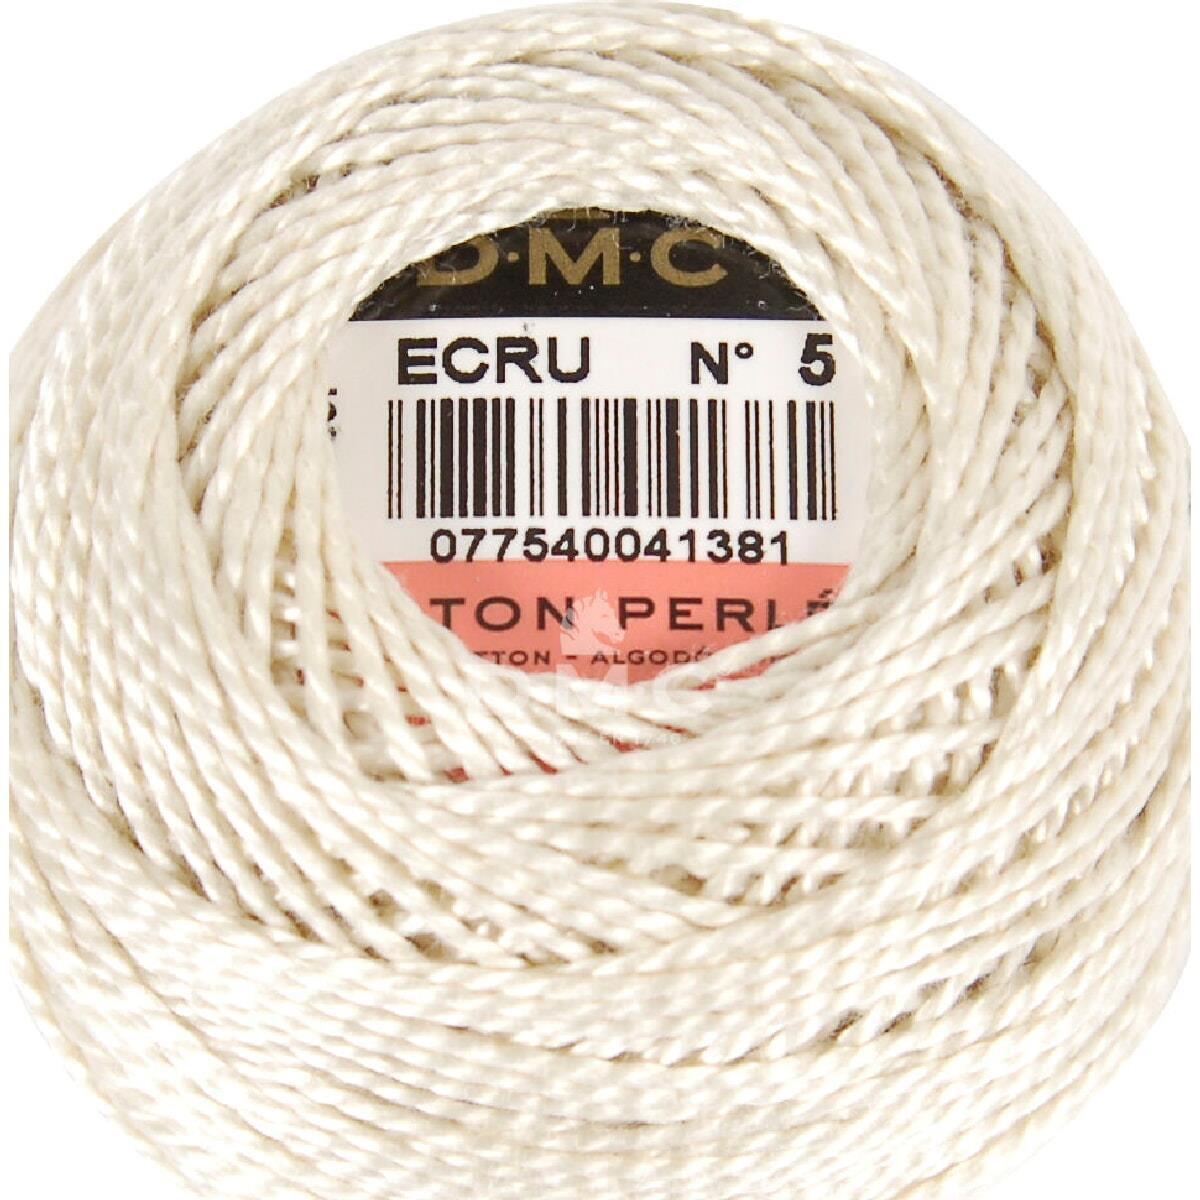 DMC Pearl Cotton on a ball Size 5, 10g, 116A/5-ECRU